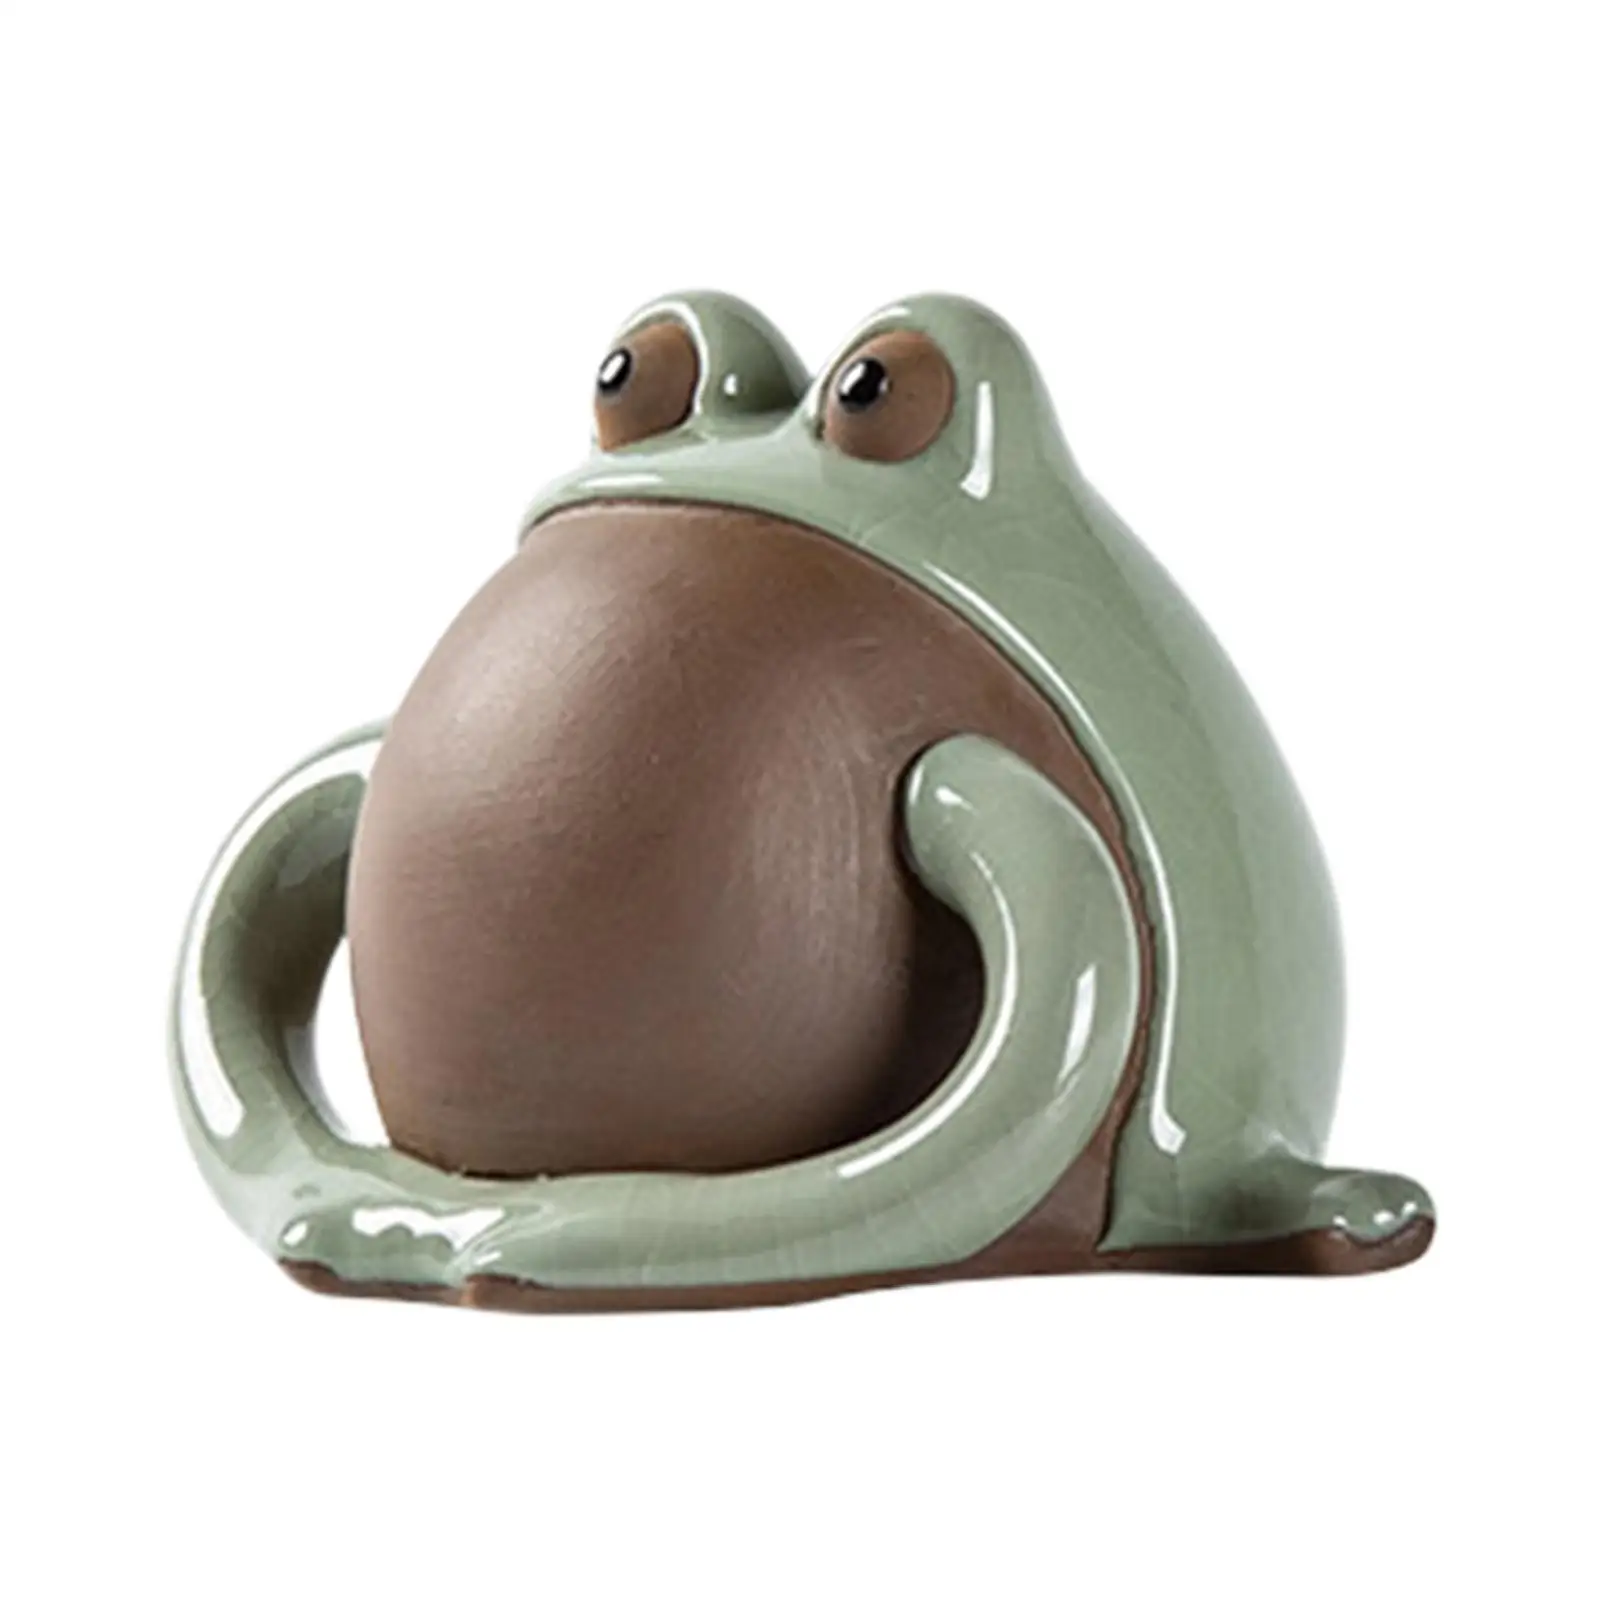 Tea Pet Lovers Gifts Frog Statue for Table Centerpiece Tea Room Desktop